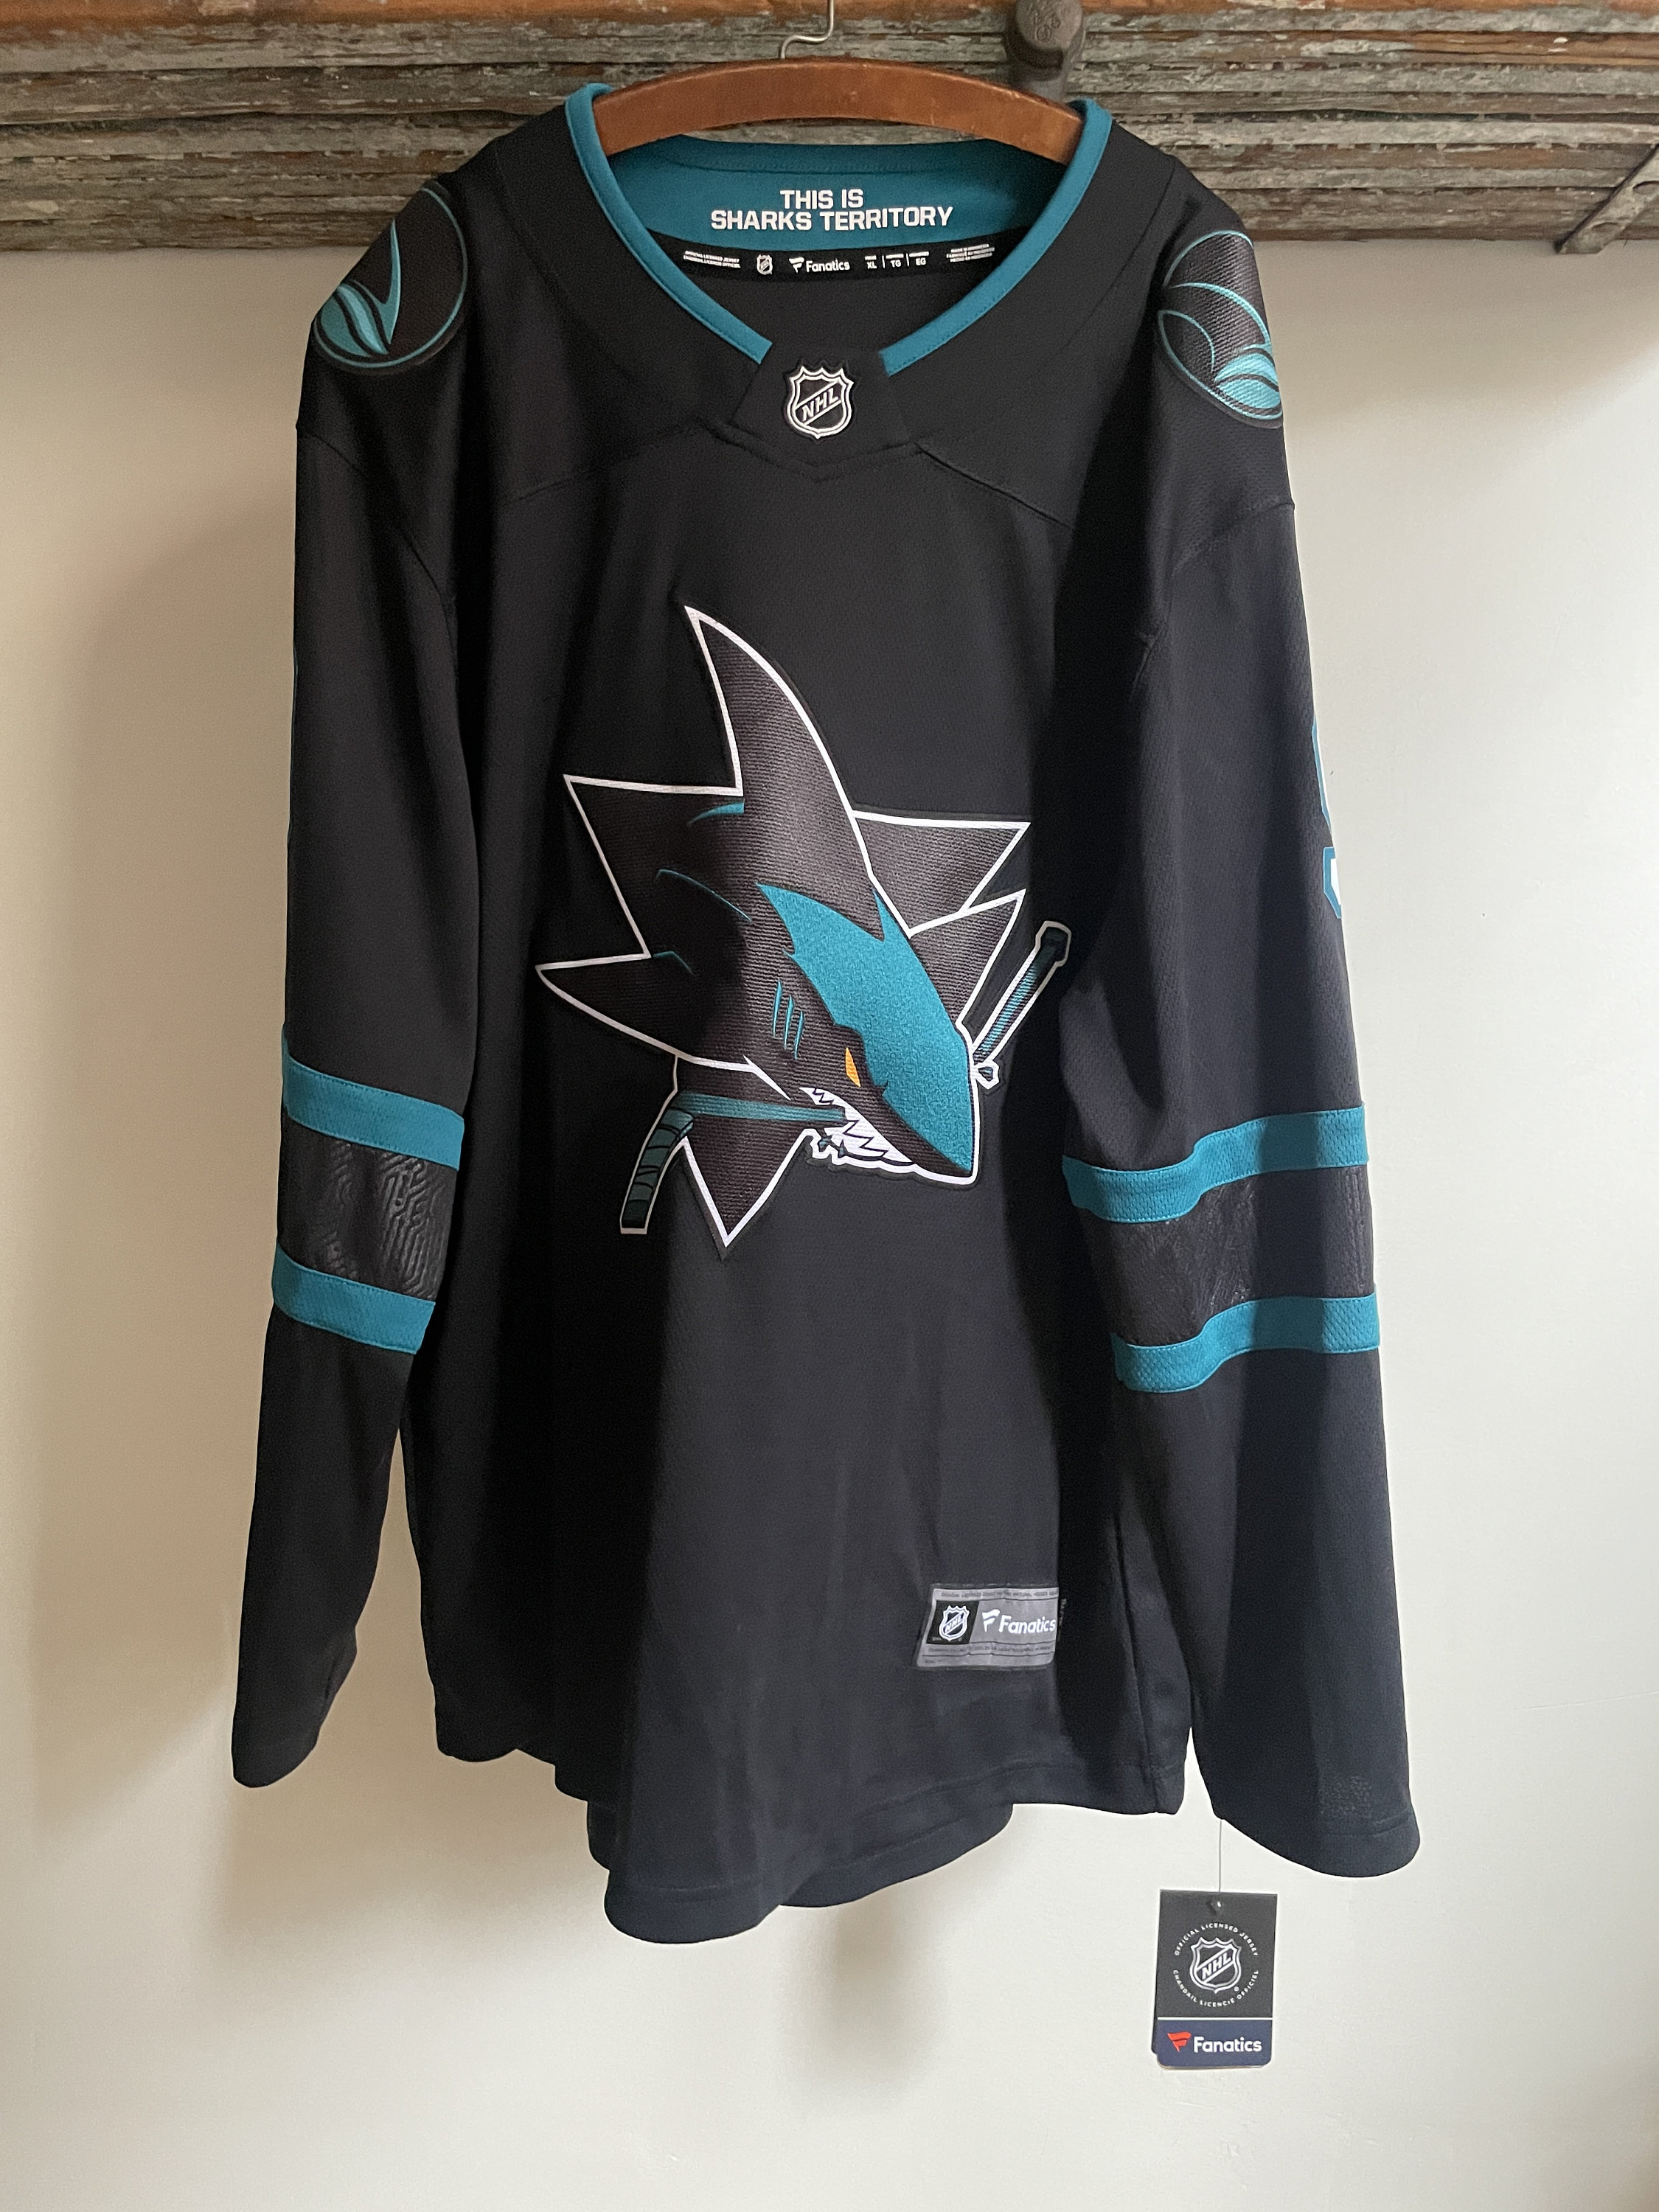 San Jose Sharks Hockey Jersey CMP Vintage 1990/95 Size L